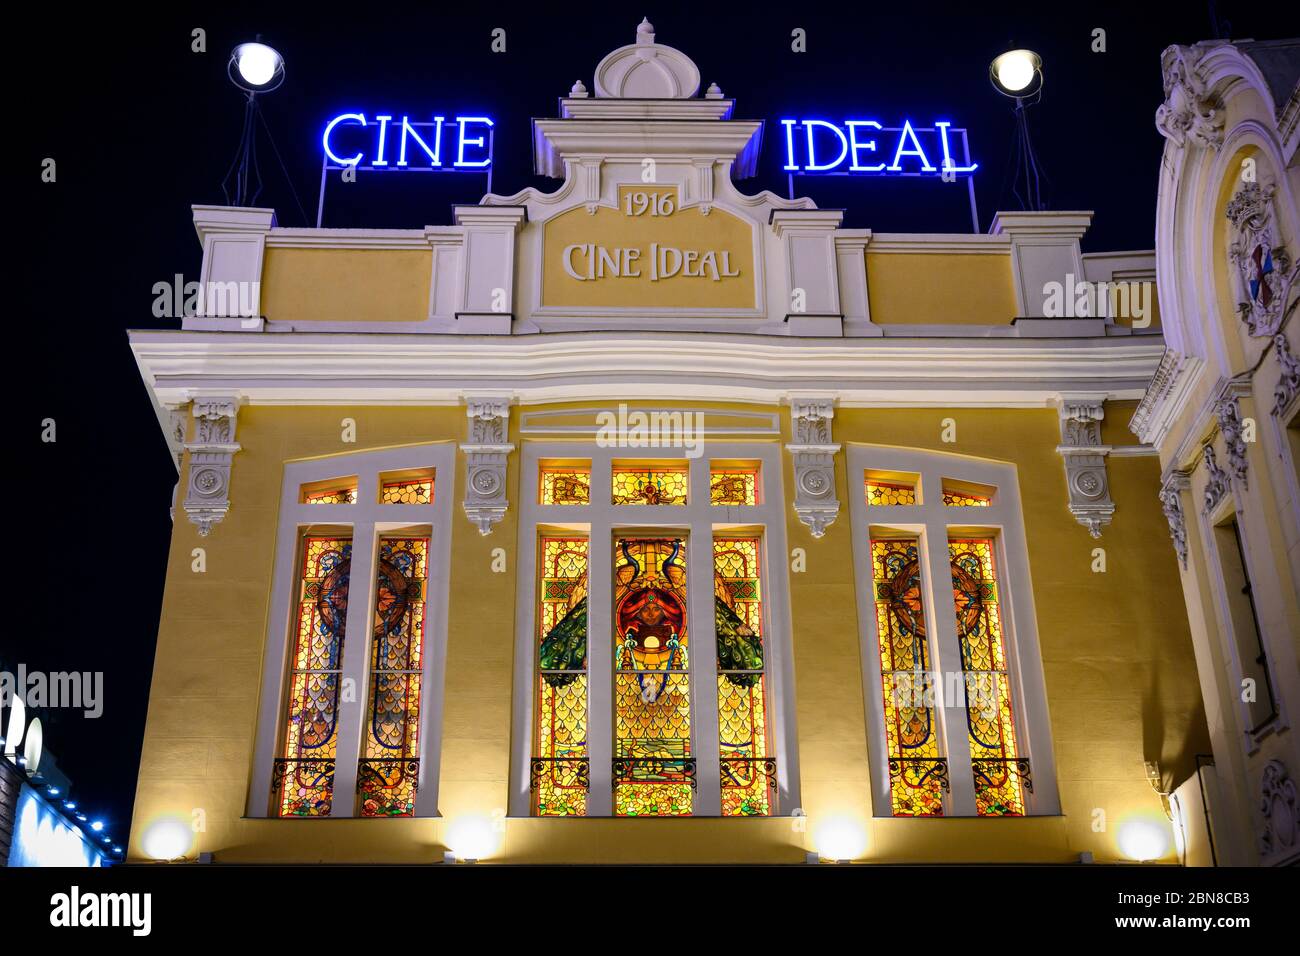 Il cinema Yelmo Cine è uno dei cinema più antichi di Madrid del 1916 circa. Con vetrate staind attribuite alla fabbrica la Casa Maumejean, Calle del Doctor Foto Stock